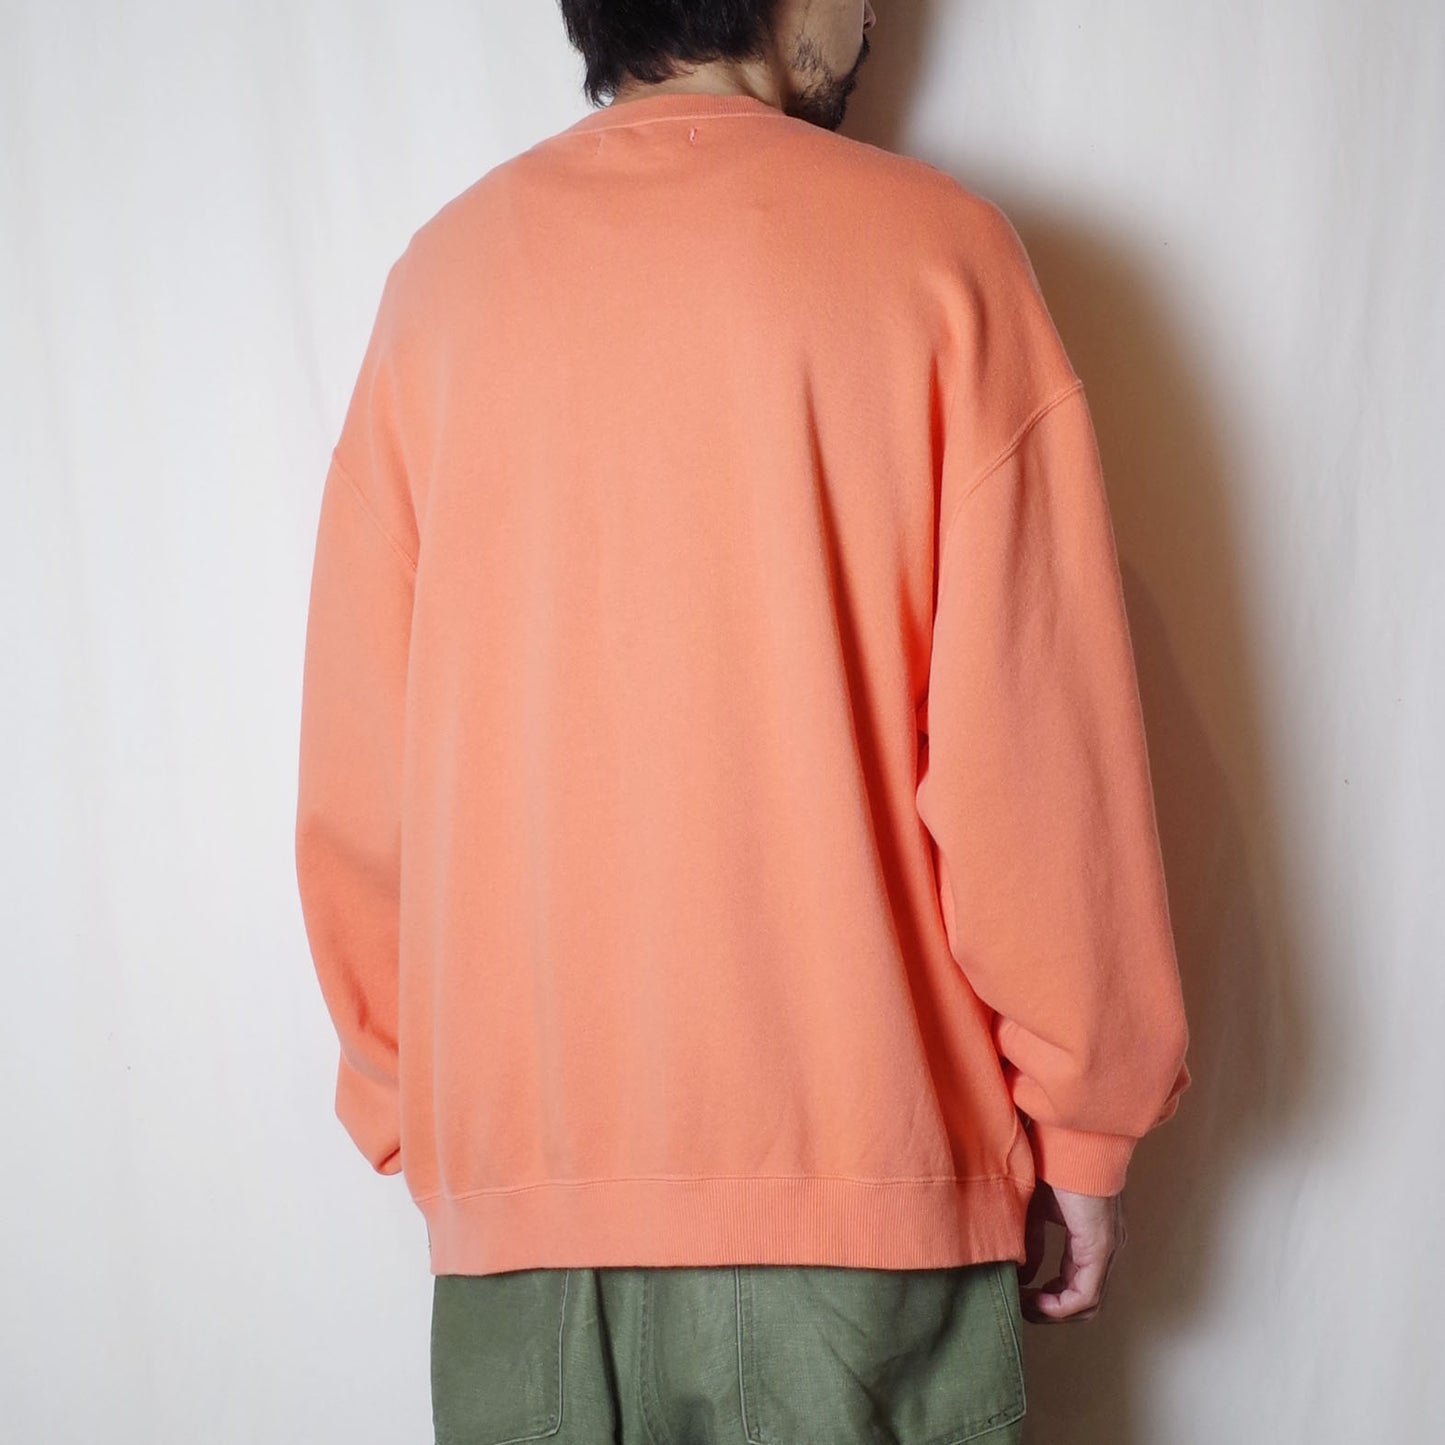 SANDINISTA "Overdyed Autumn Sweatshirts" / サンディニスタ "製品染めスウェット"